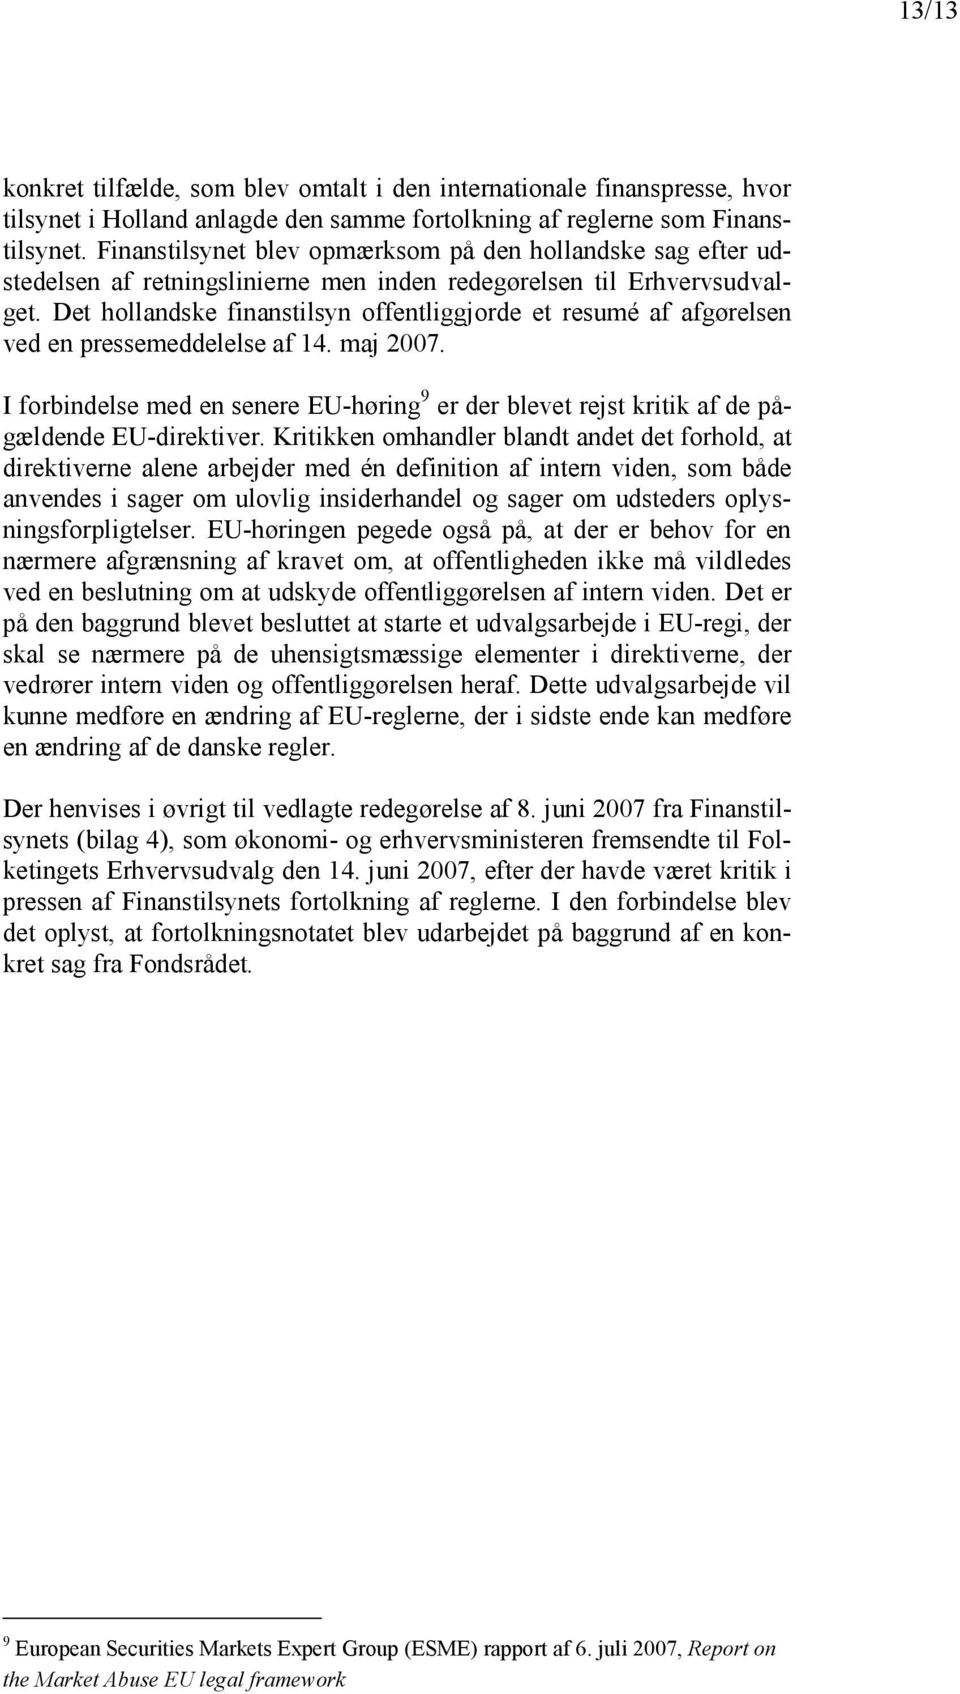 Det hollandske finanstilsyn offentliggjorde et resumé af afgørelsen ved en pressemeddelelse af 14. maj 2007.